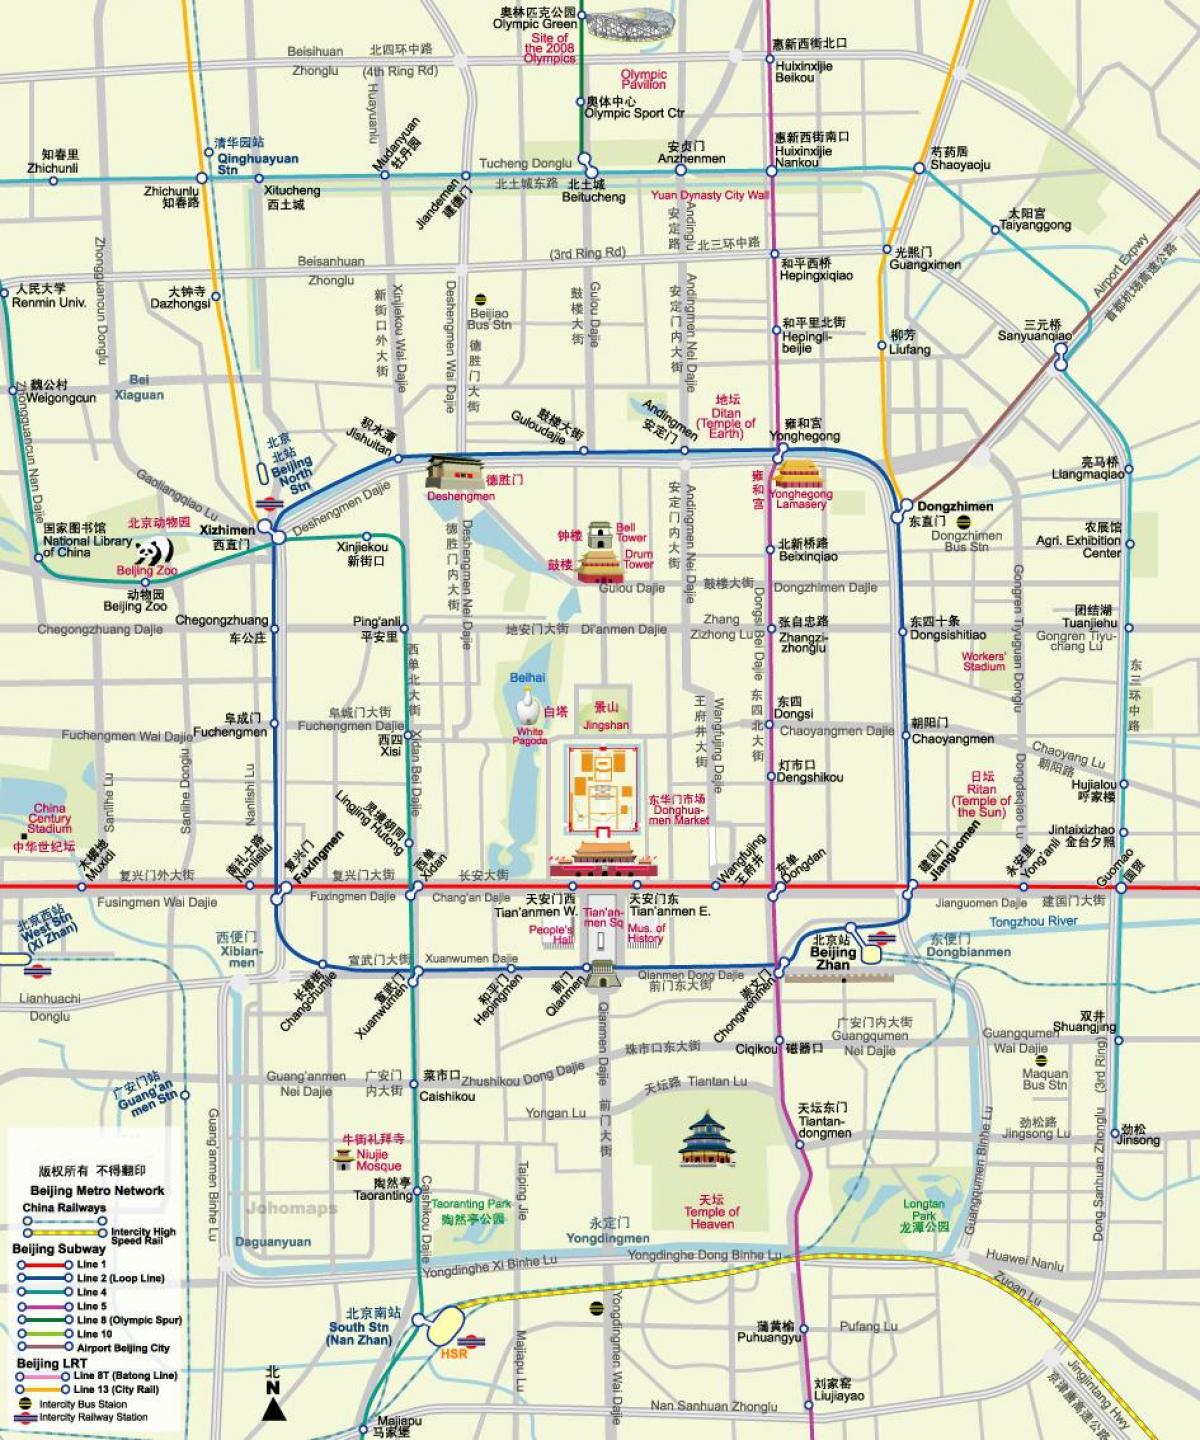 نقشه مترو پکن نقشه با جاذبه های گردشگری